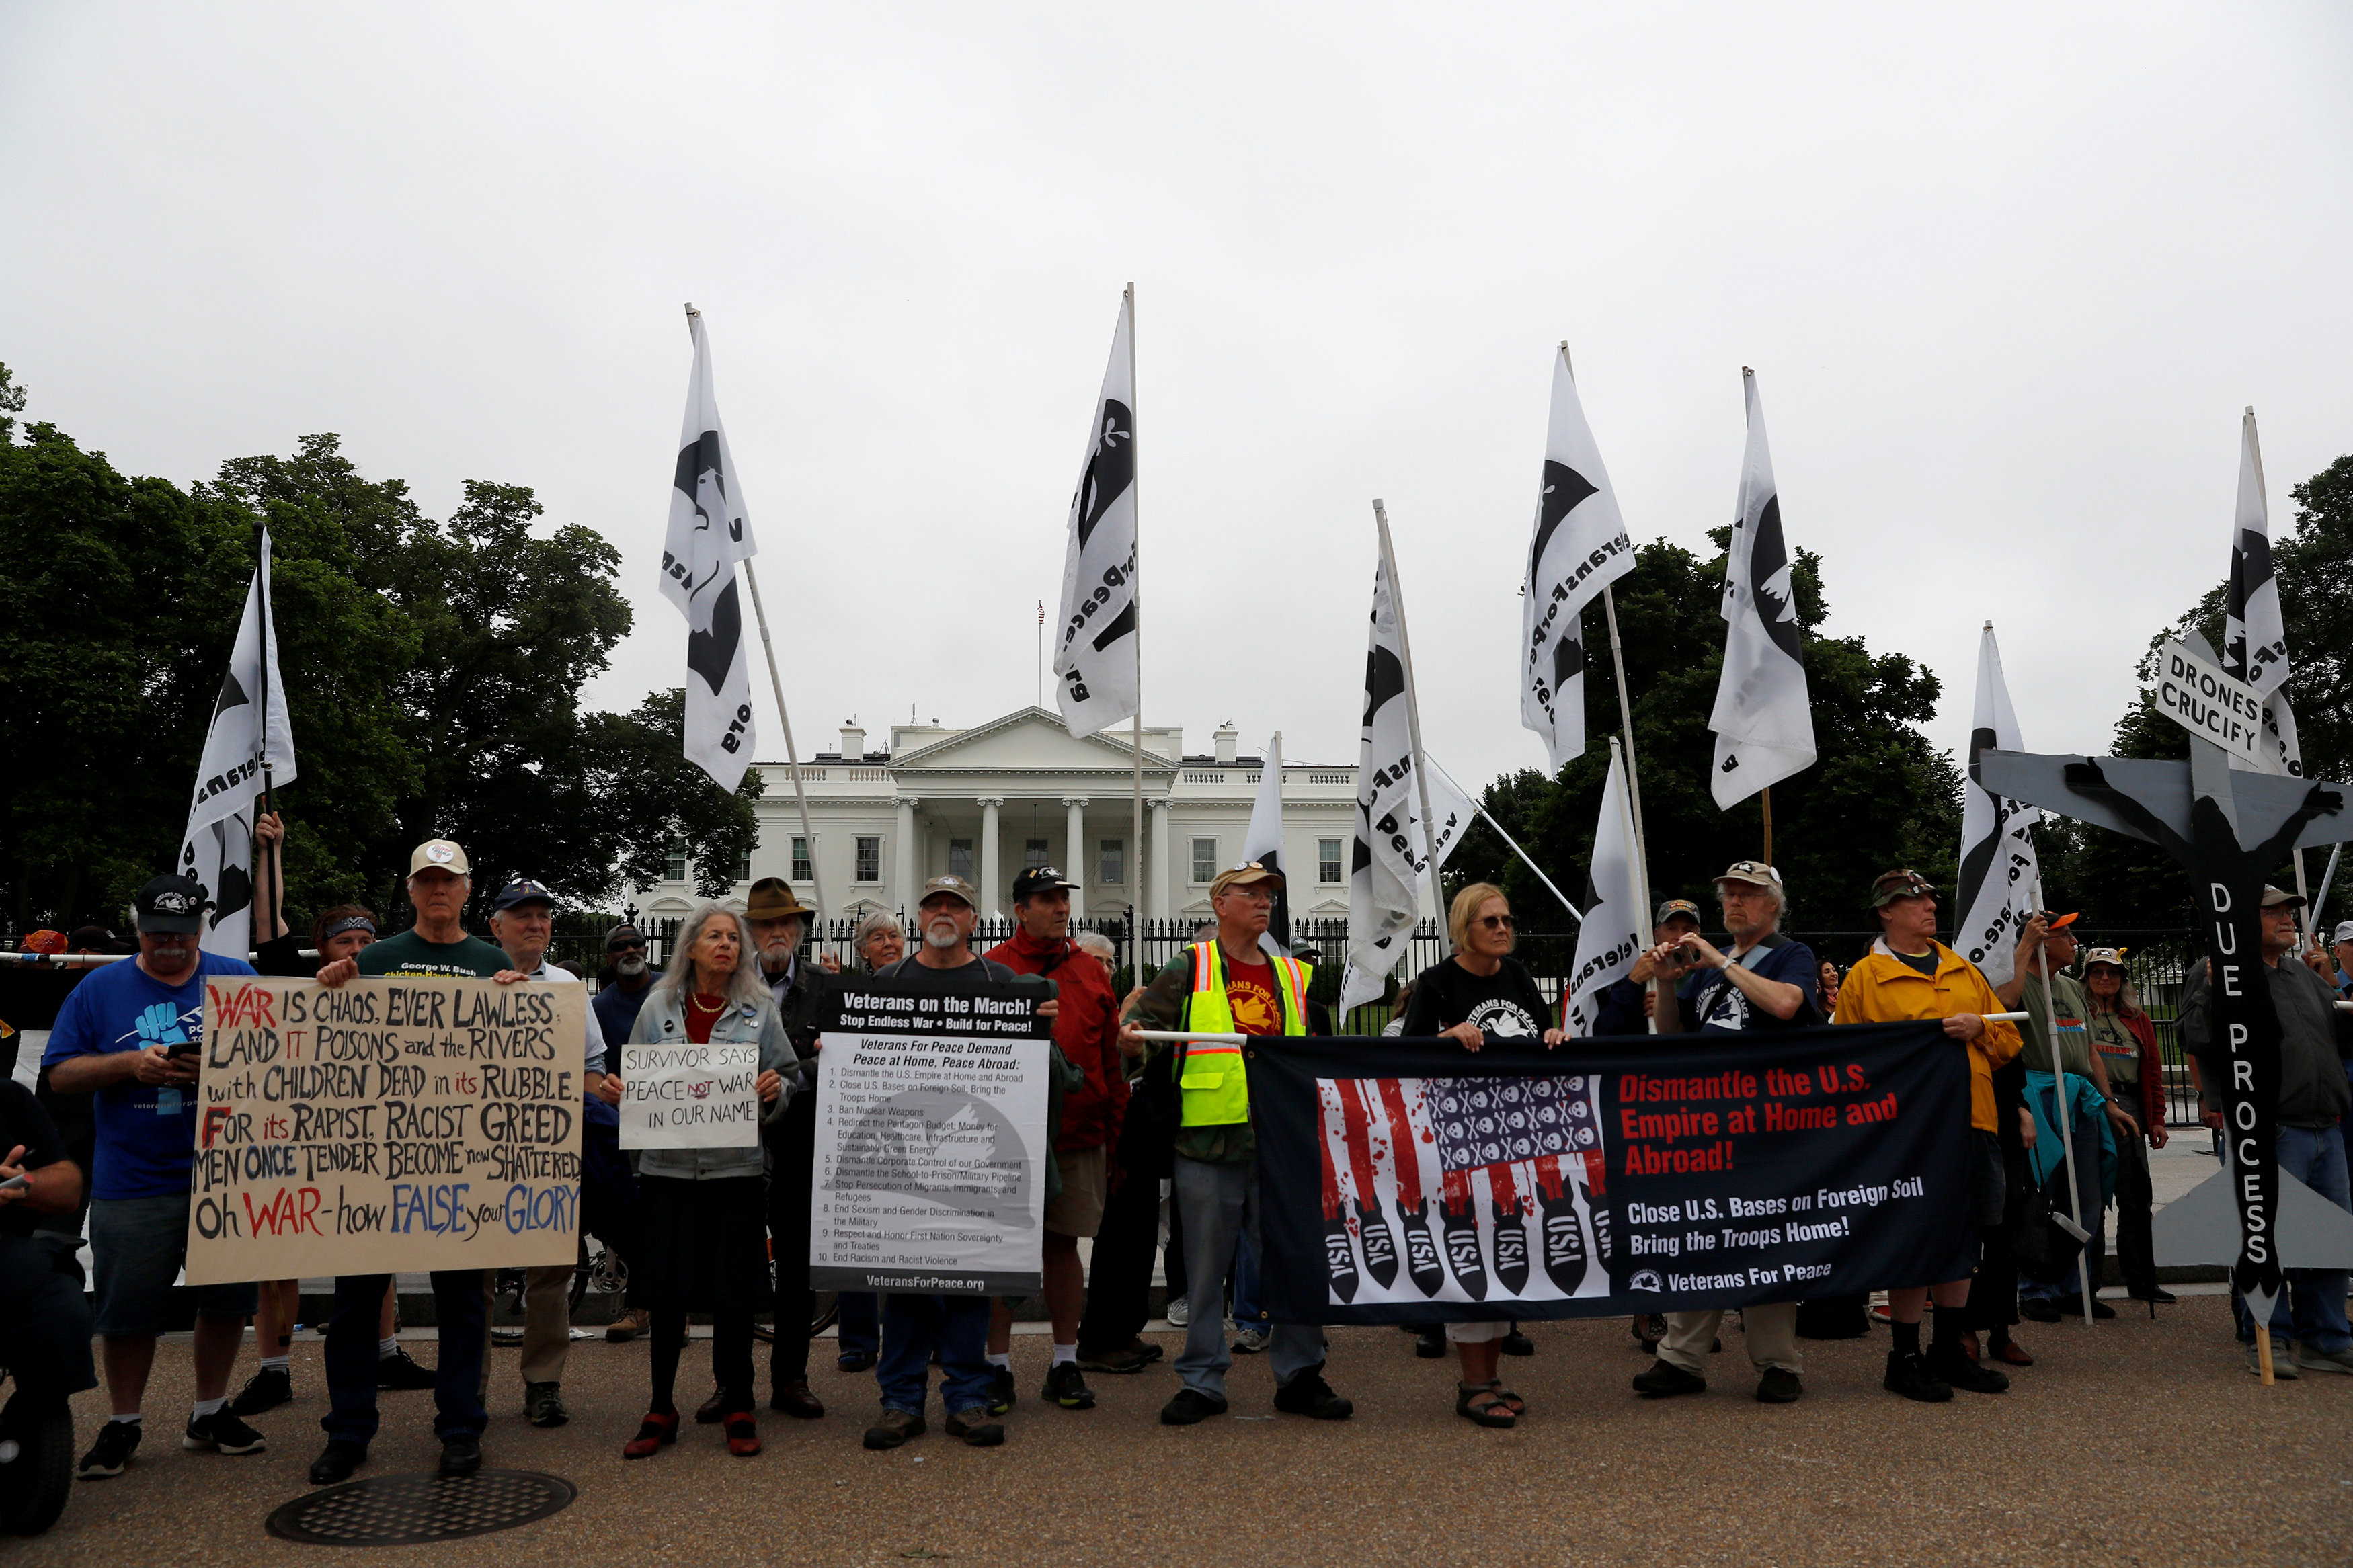 المتظاهرون يحملون لافتات إعتراضا على سياسة الرئيس الأمريكى